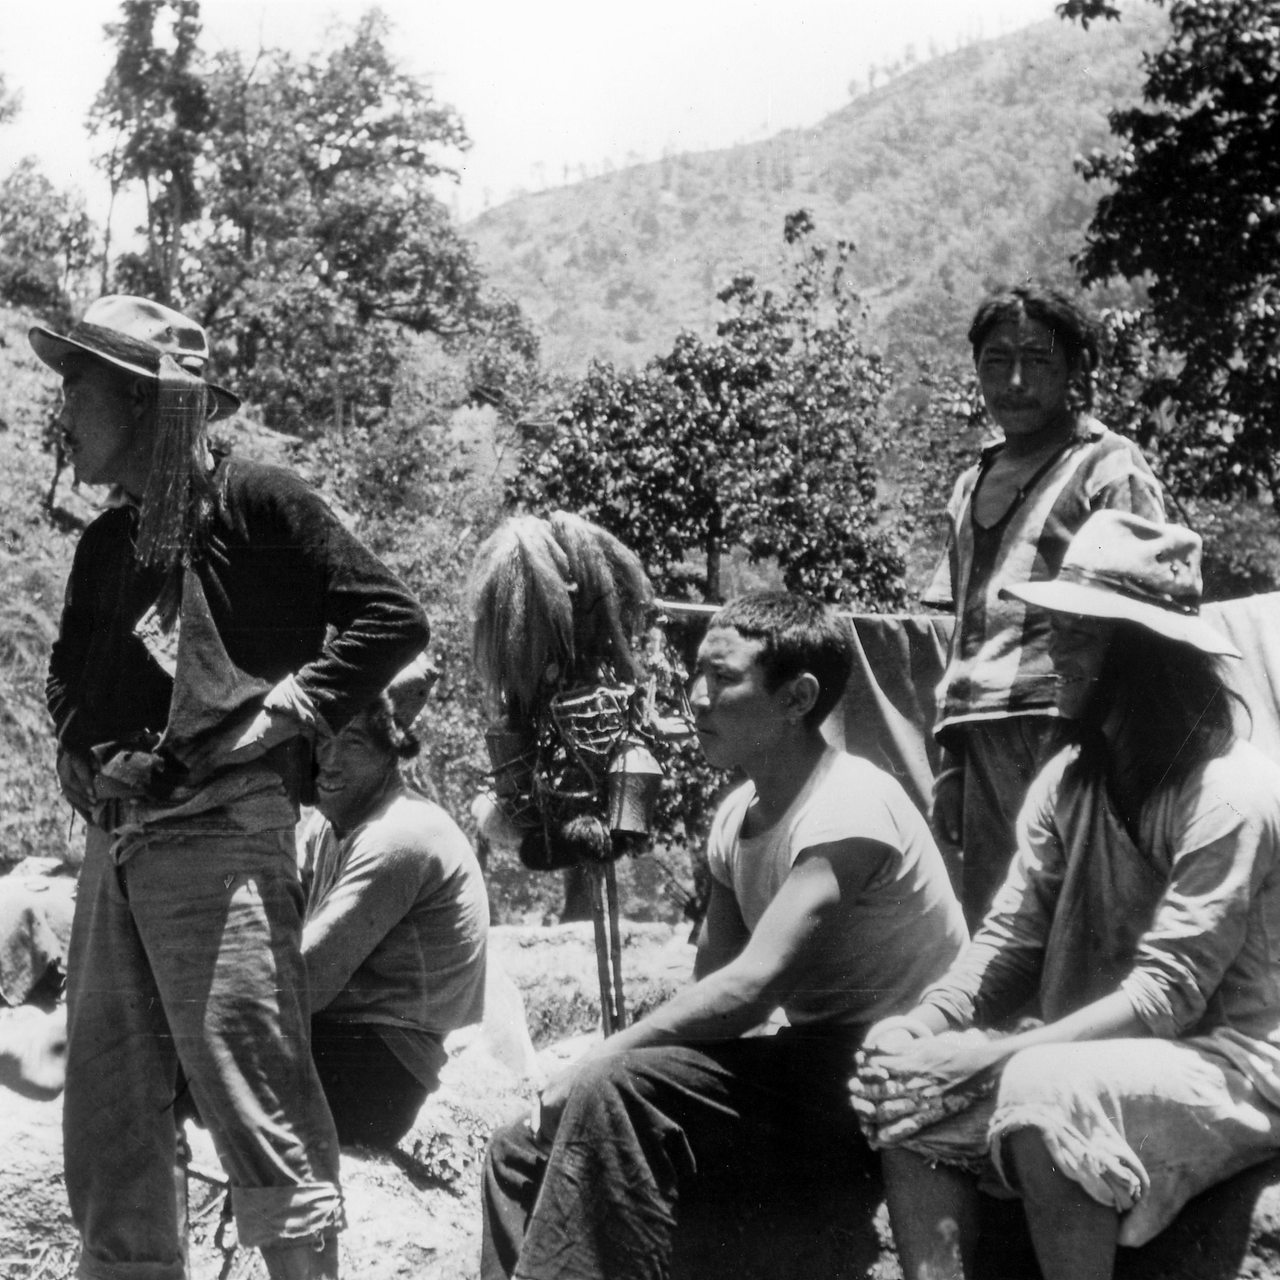 Mitglieder des Widerstands gegen das Regime des kommunistischen China im April 1959 in den Bergen Tibets.